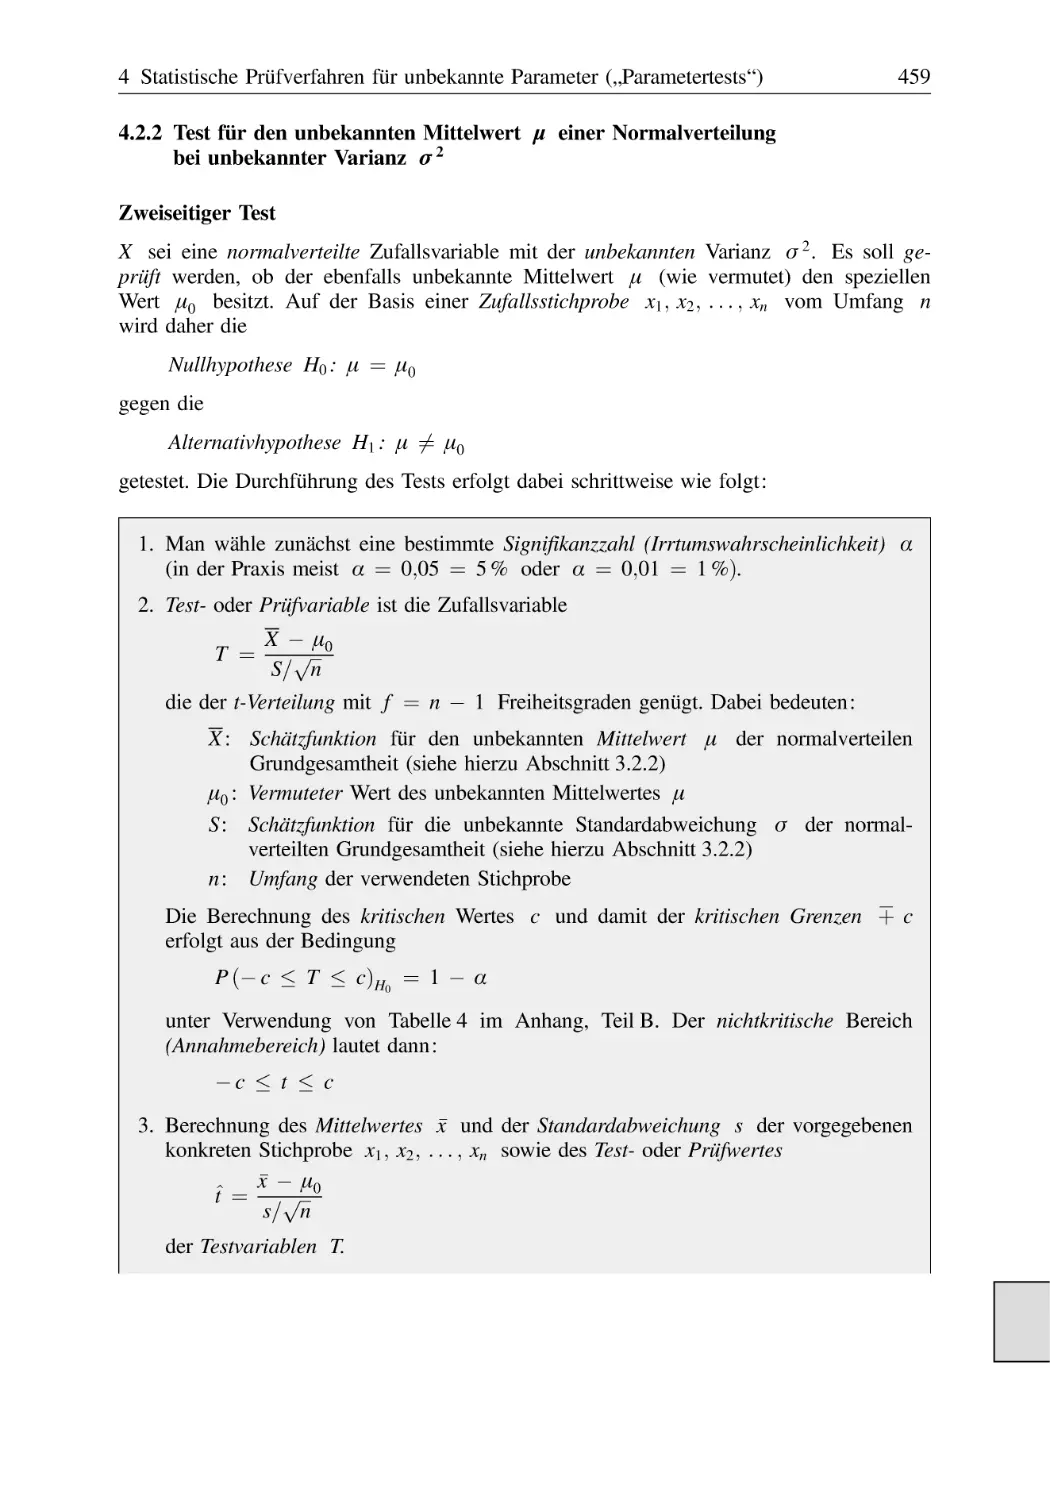 4.2.2 Test für den unbekannten Mittelwert μ einer Normalverteilung bei unbekannter Varianz σ²